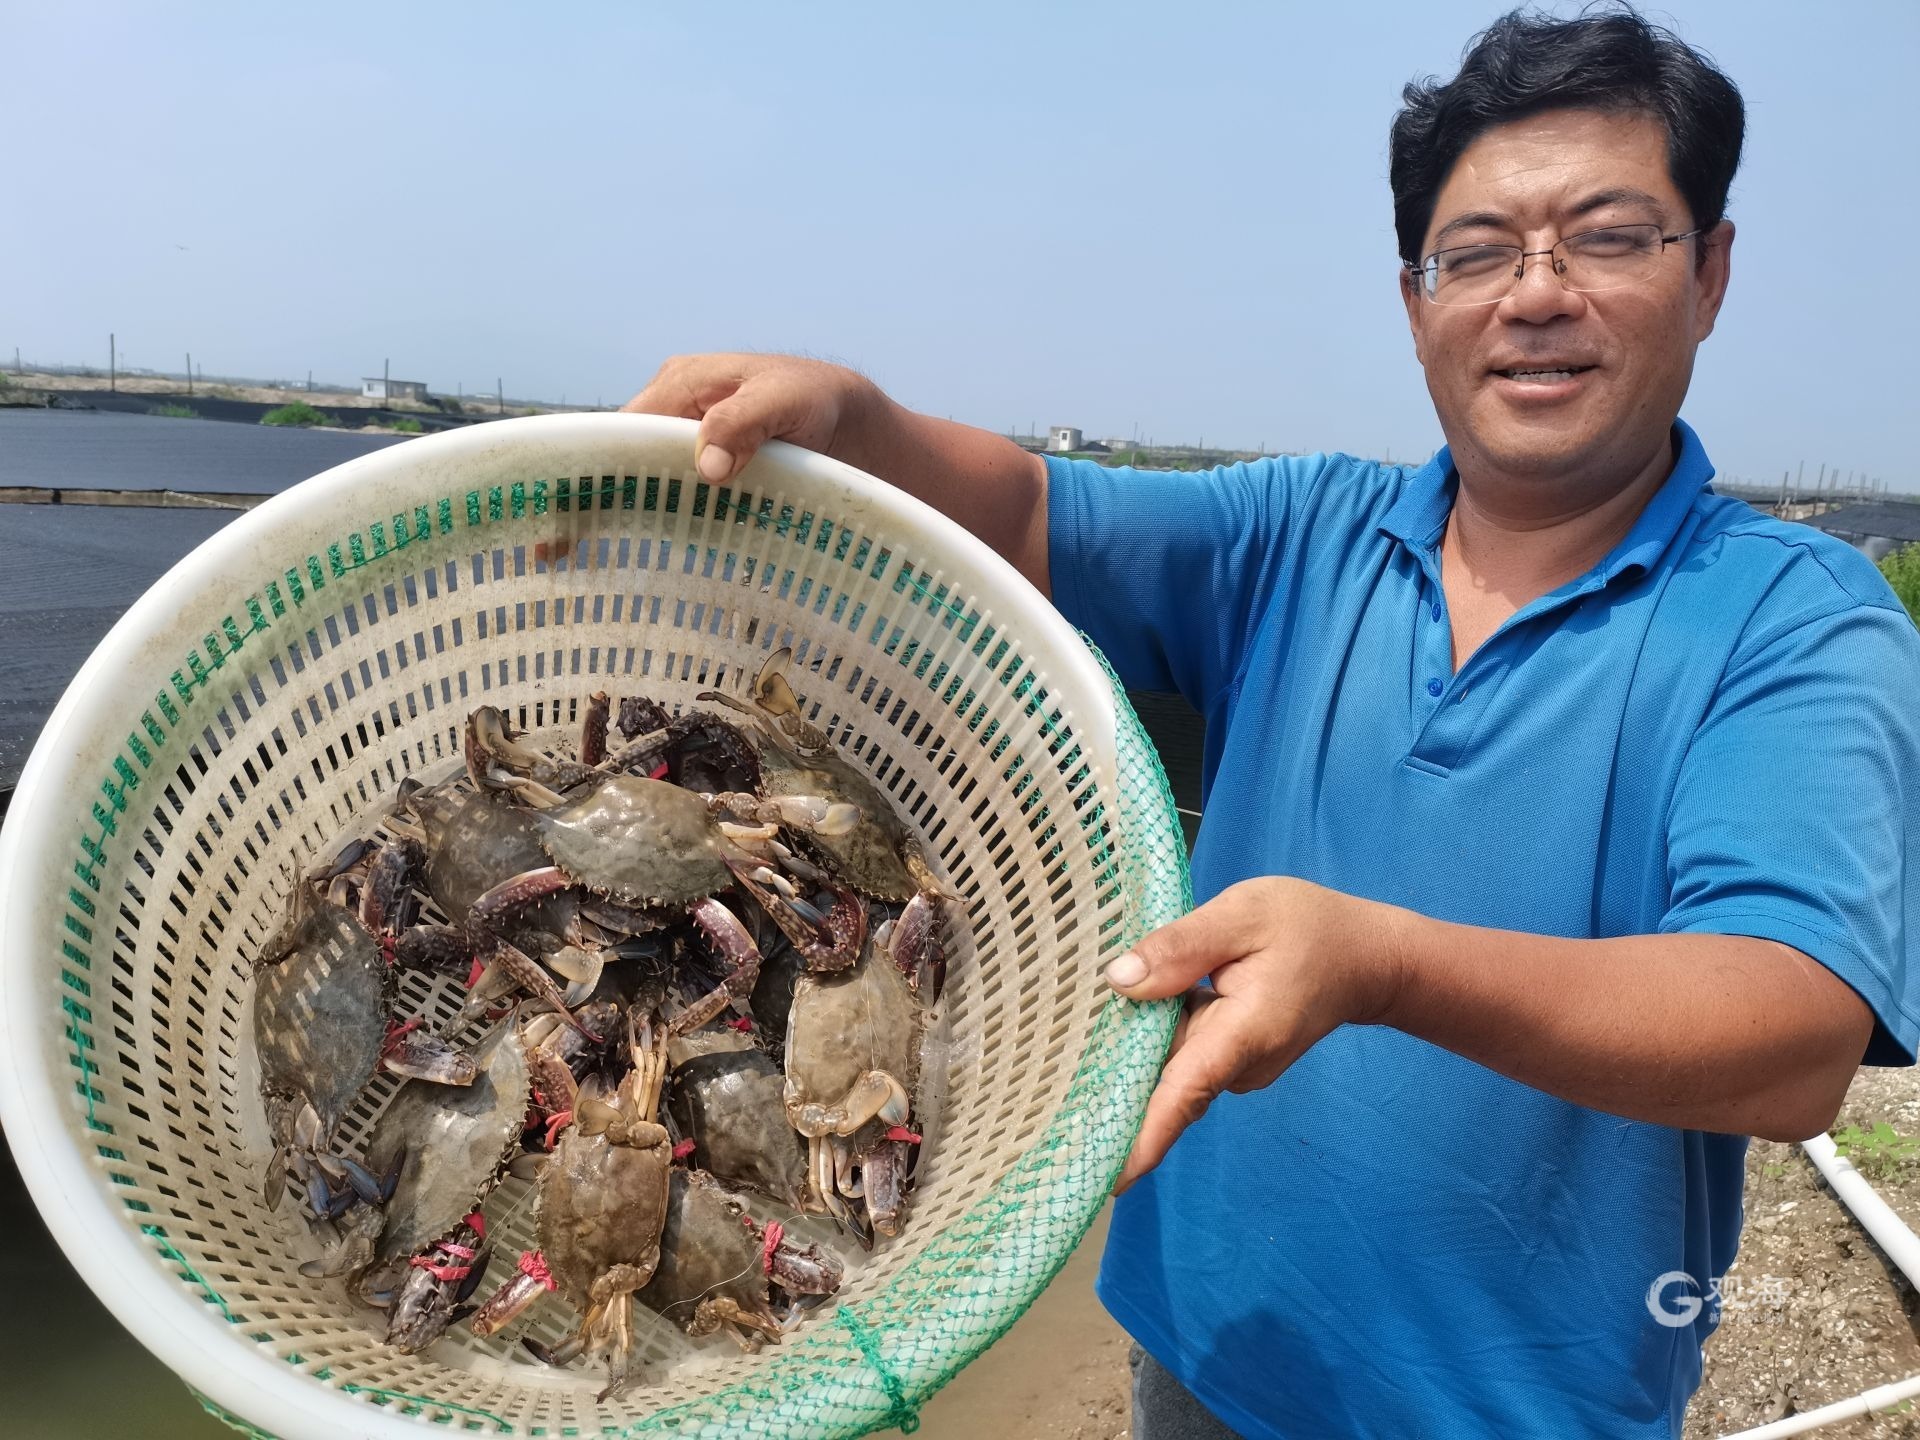 游客青岛海边享受赶海乐趣 捕捉螃蟹蛤蜊等小海鲜 - 青岛新闻网